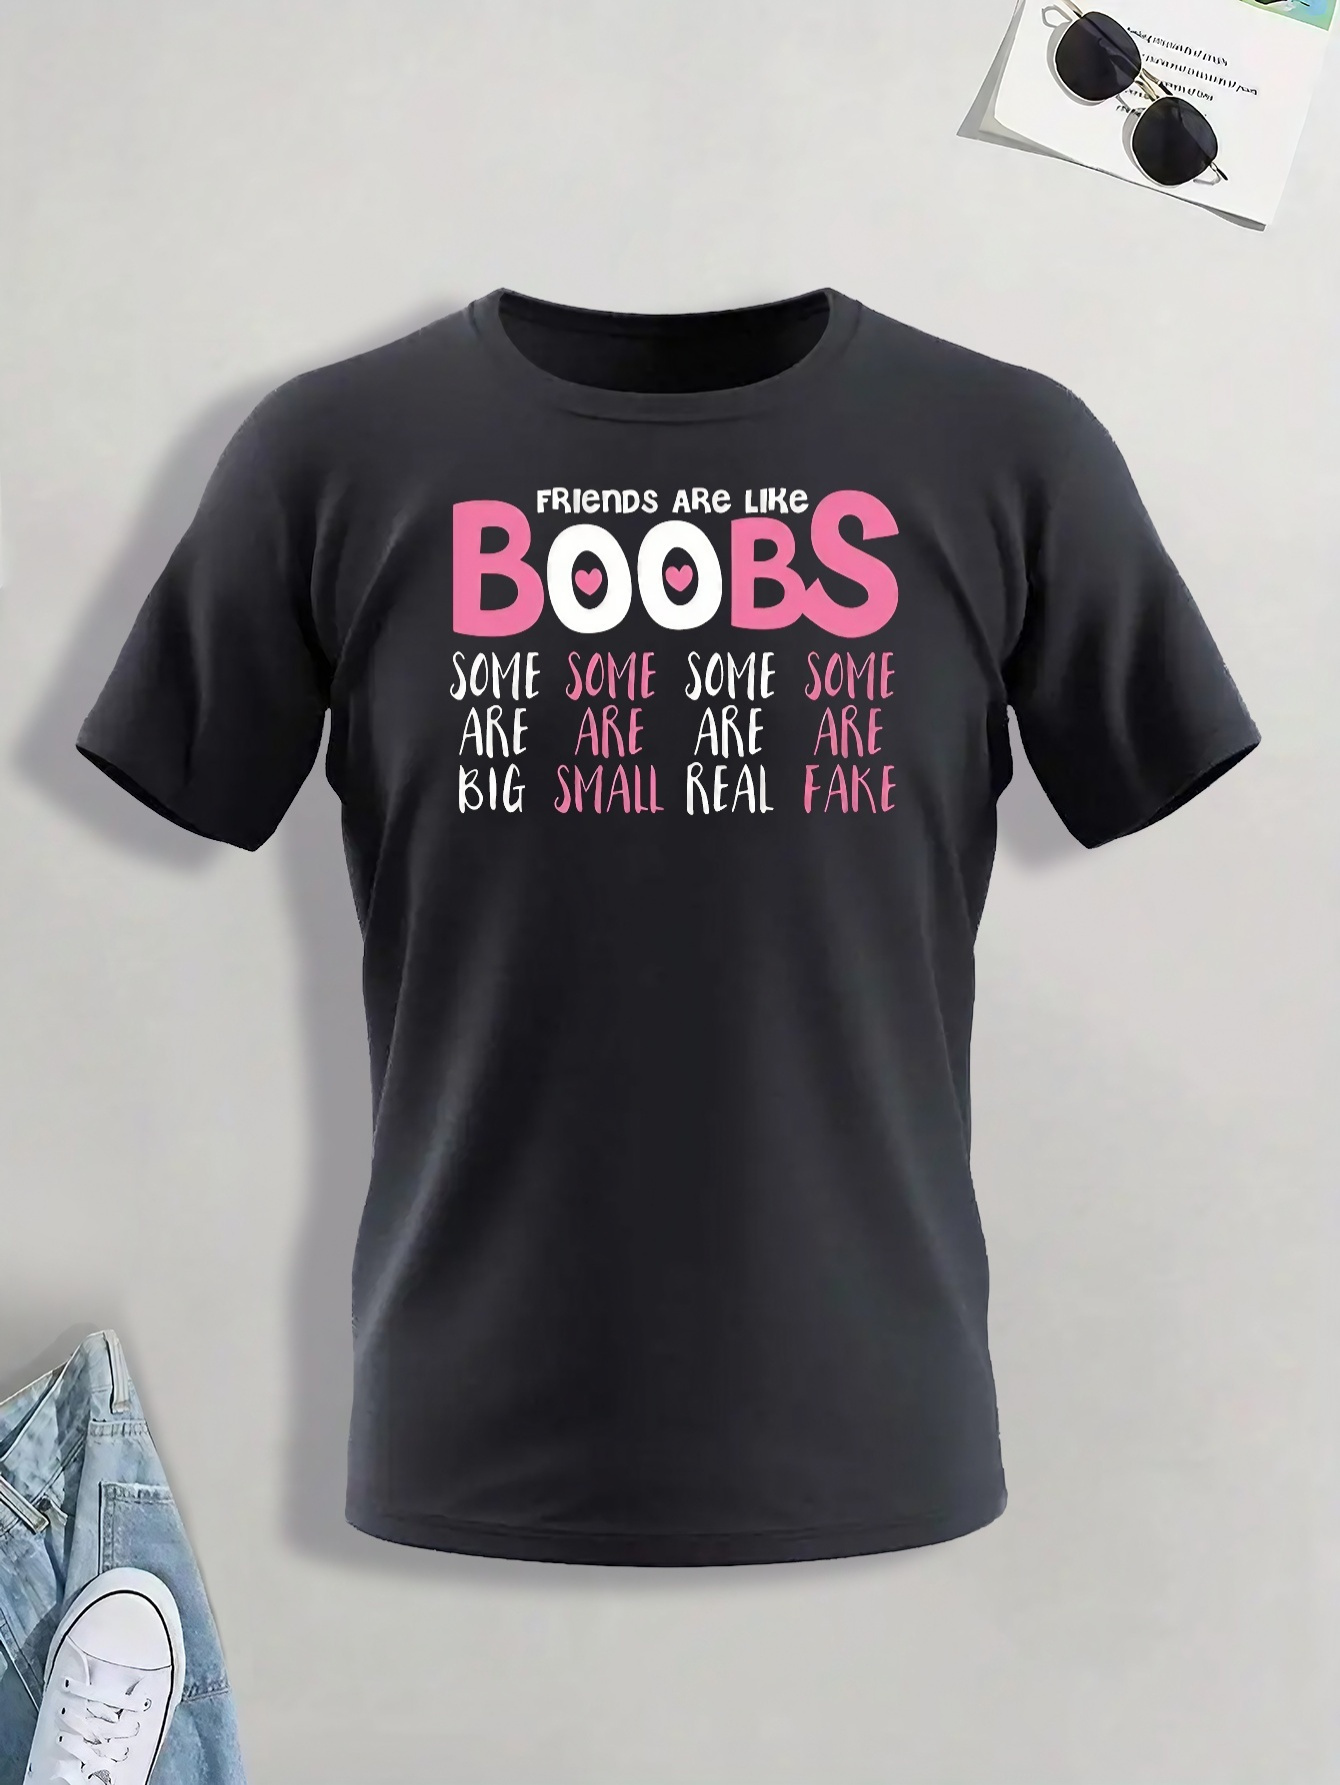 Small Boobs Big Heart Shirt Boobs Shirt Boobs Tshirt Tits Shirt Tities T Shirt  Boobs Breasts Funny Boobs Tshirt Boobies Shirt 